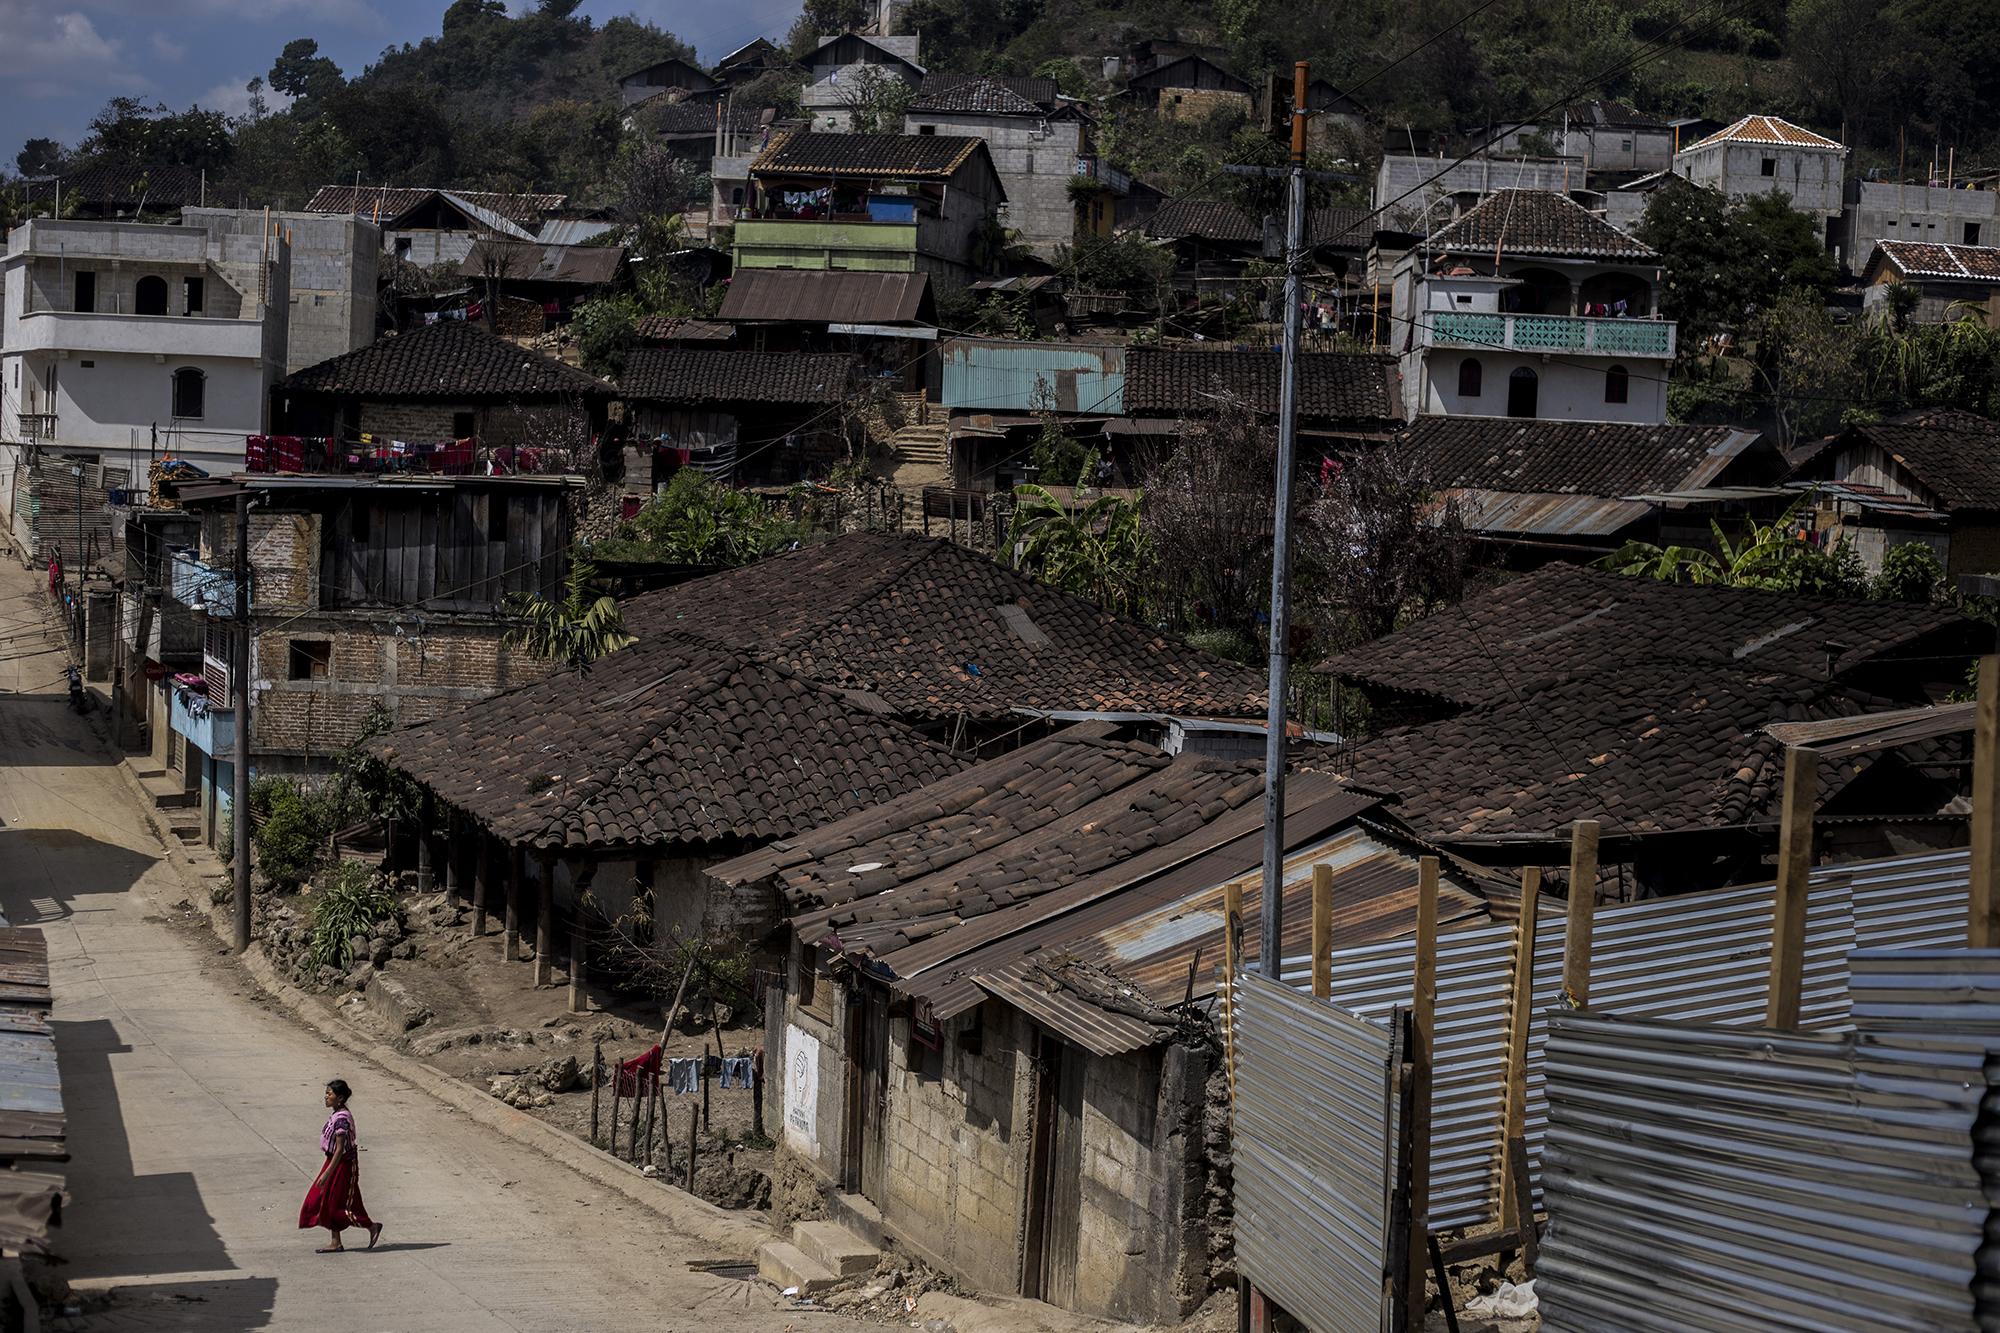 San Gaspar Chajul, un pueblo colorido y de pobreza extrema, está repleto de casas fabricadas con adobe y tejas. La zona urbana es una ciudad en ruinas, de una comunidad que subsiste de la agricultura. En las comunidades de este pueblo, el Ejército guatemalteco también masacró a sus habitantes.